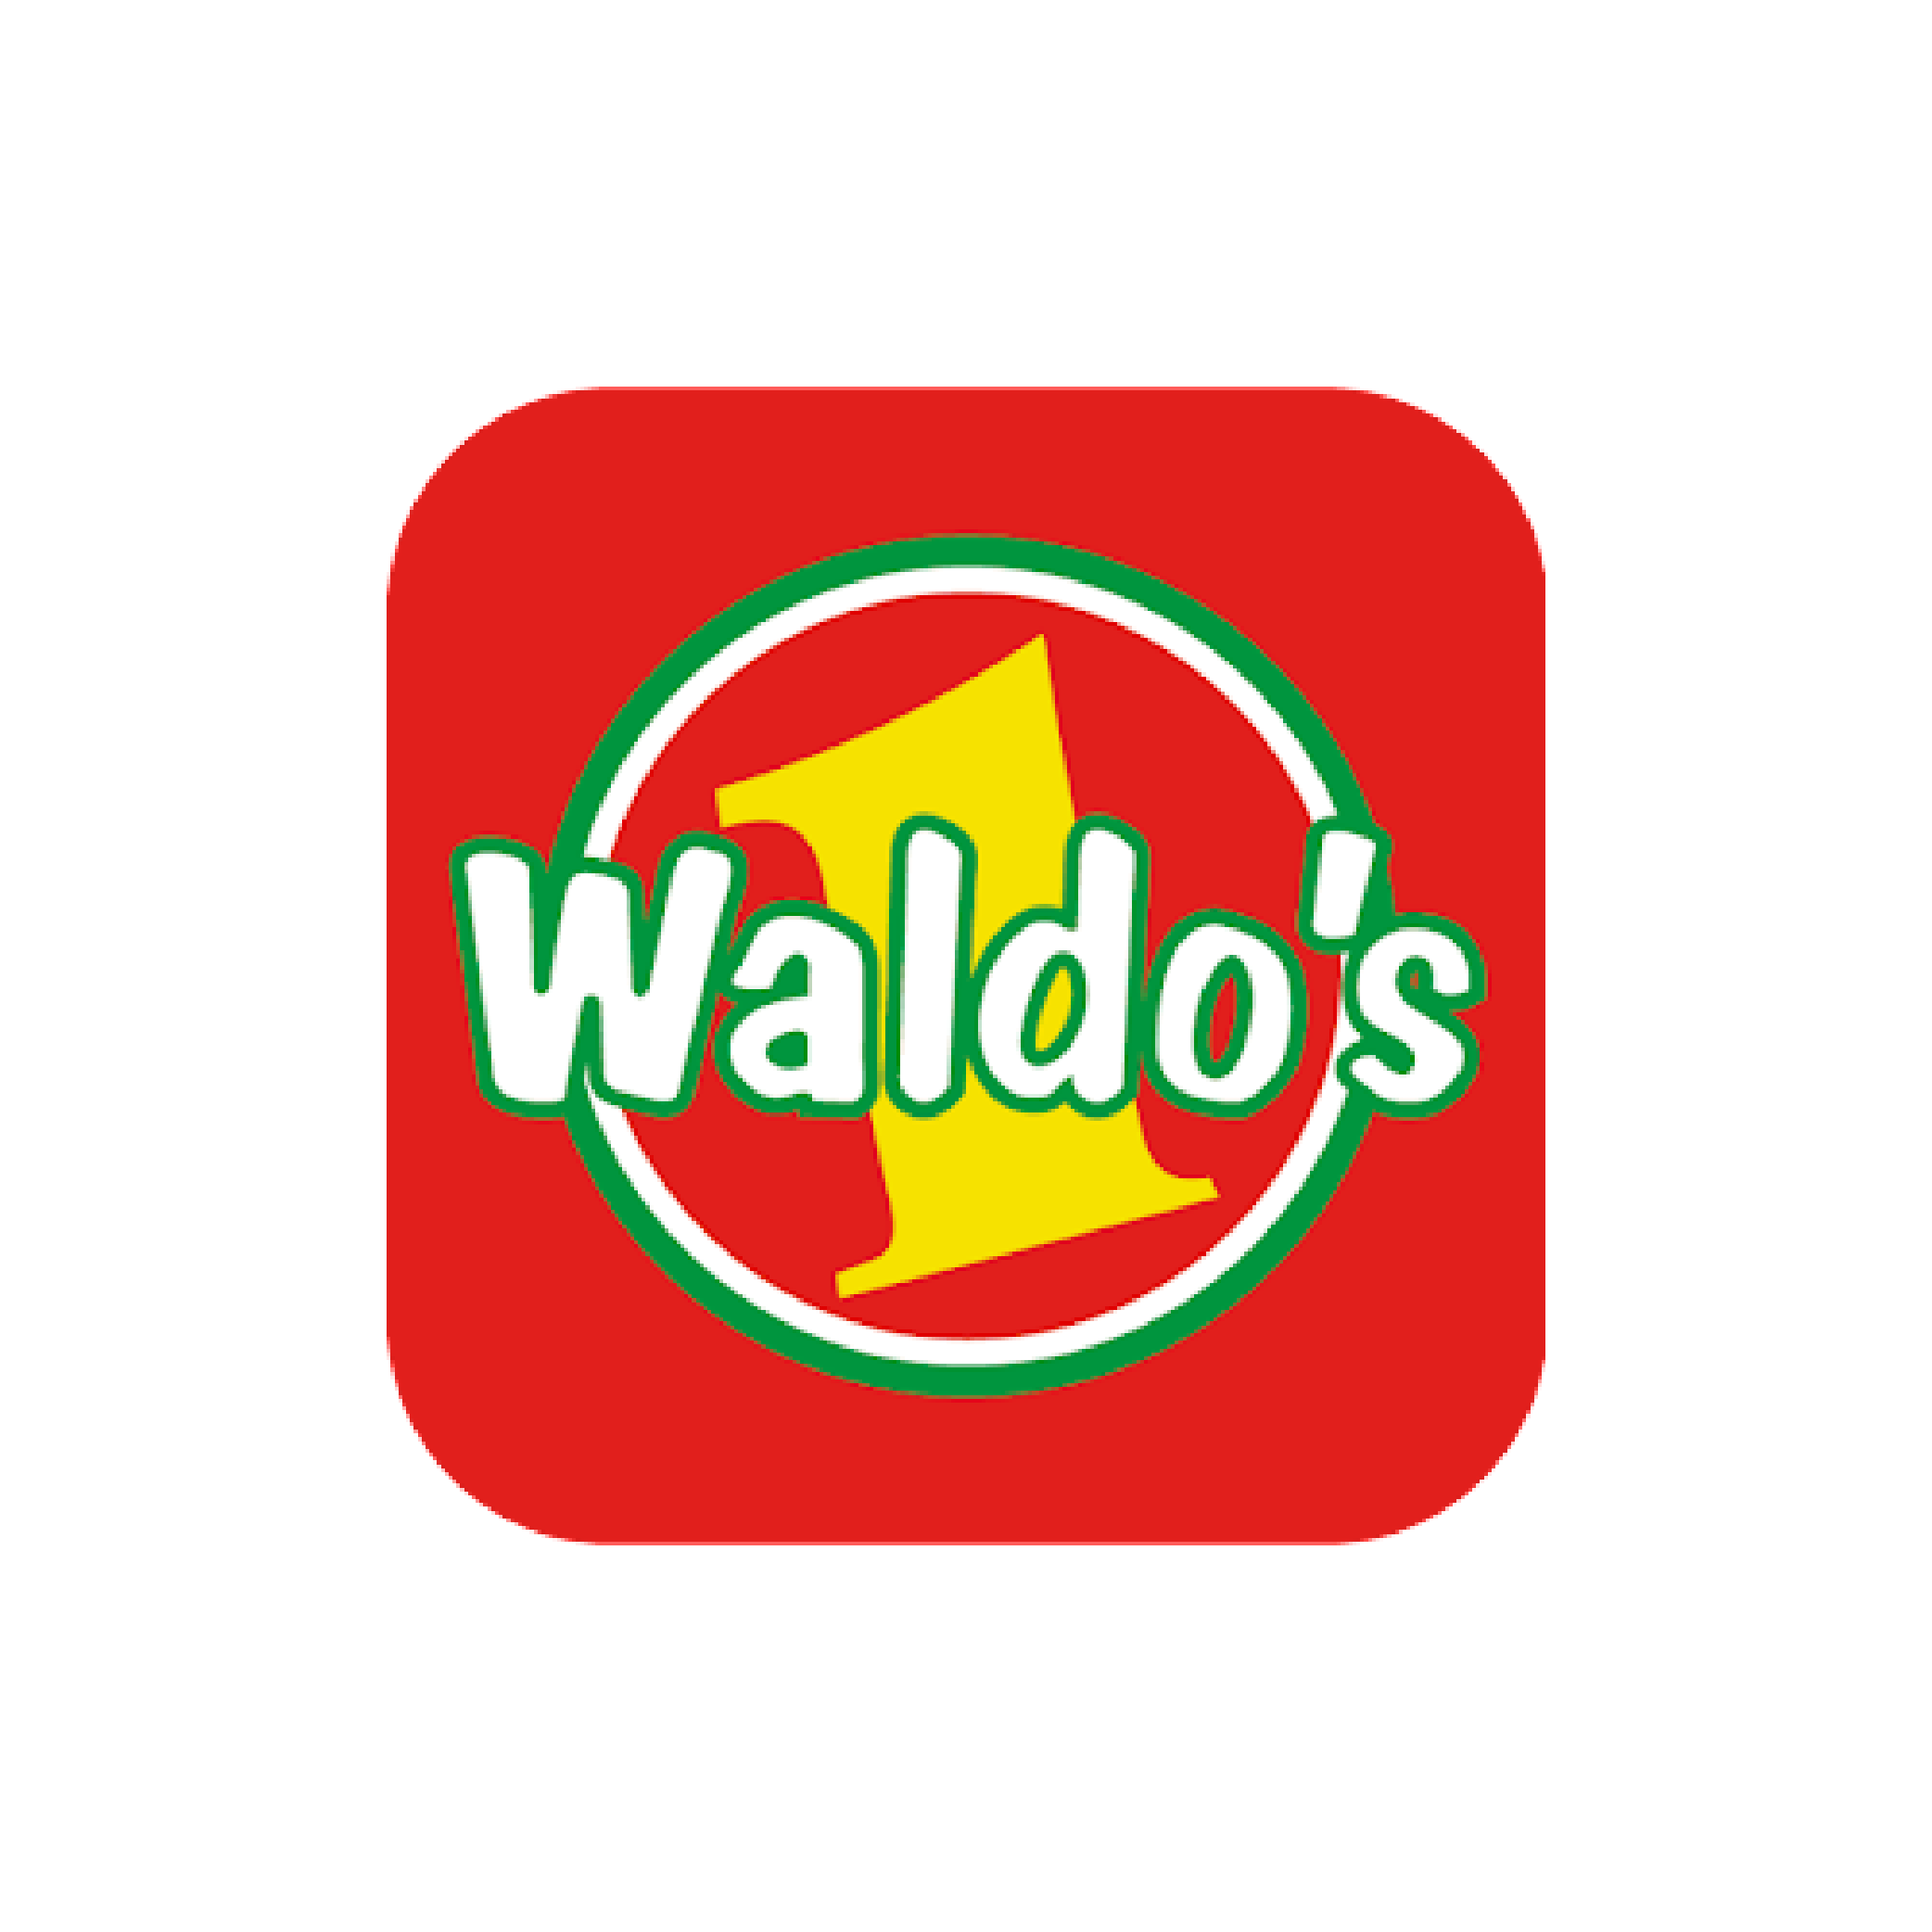 Waldos-1